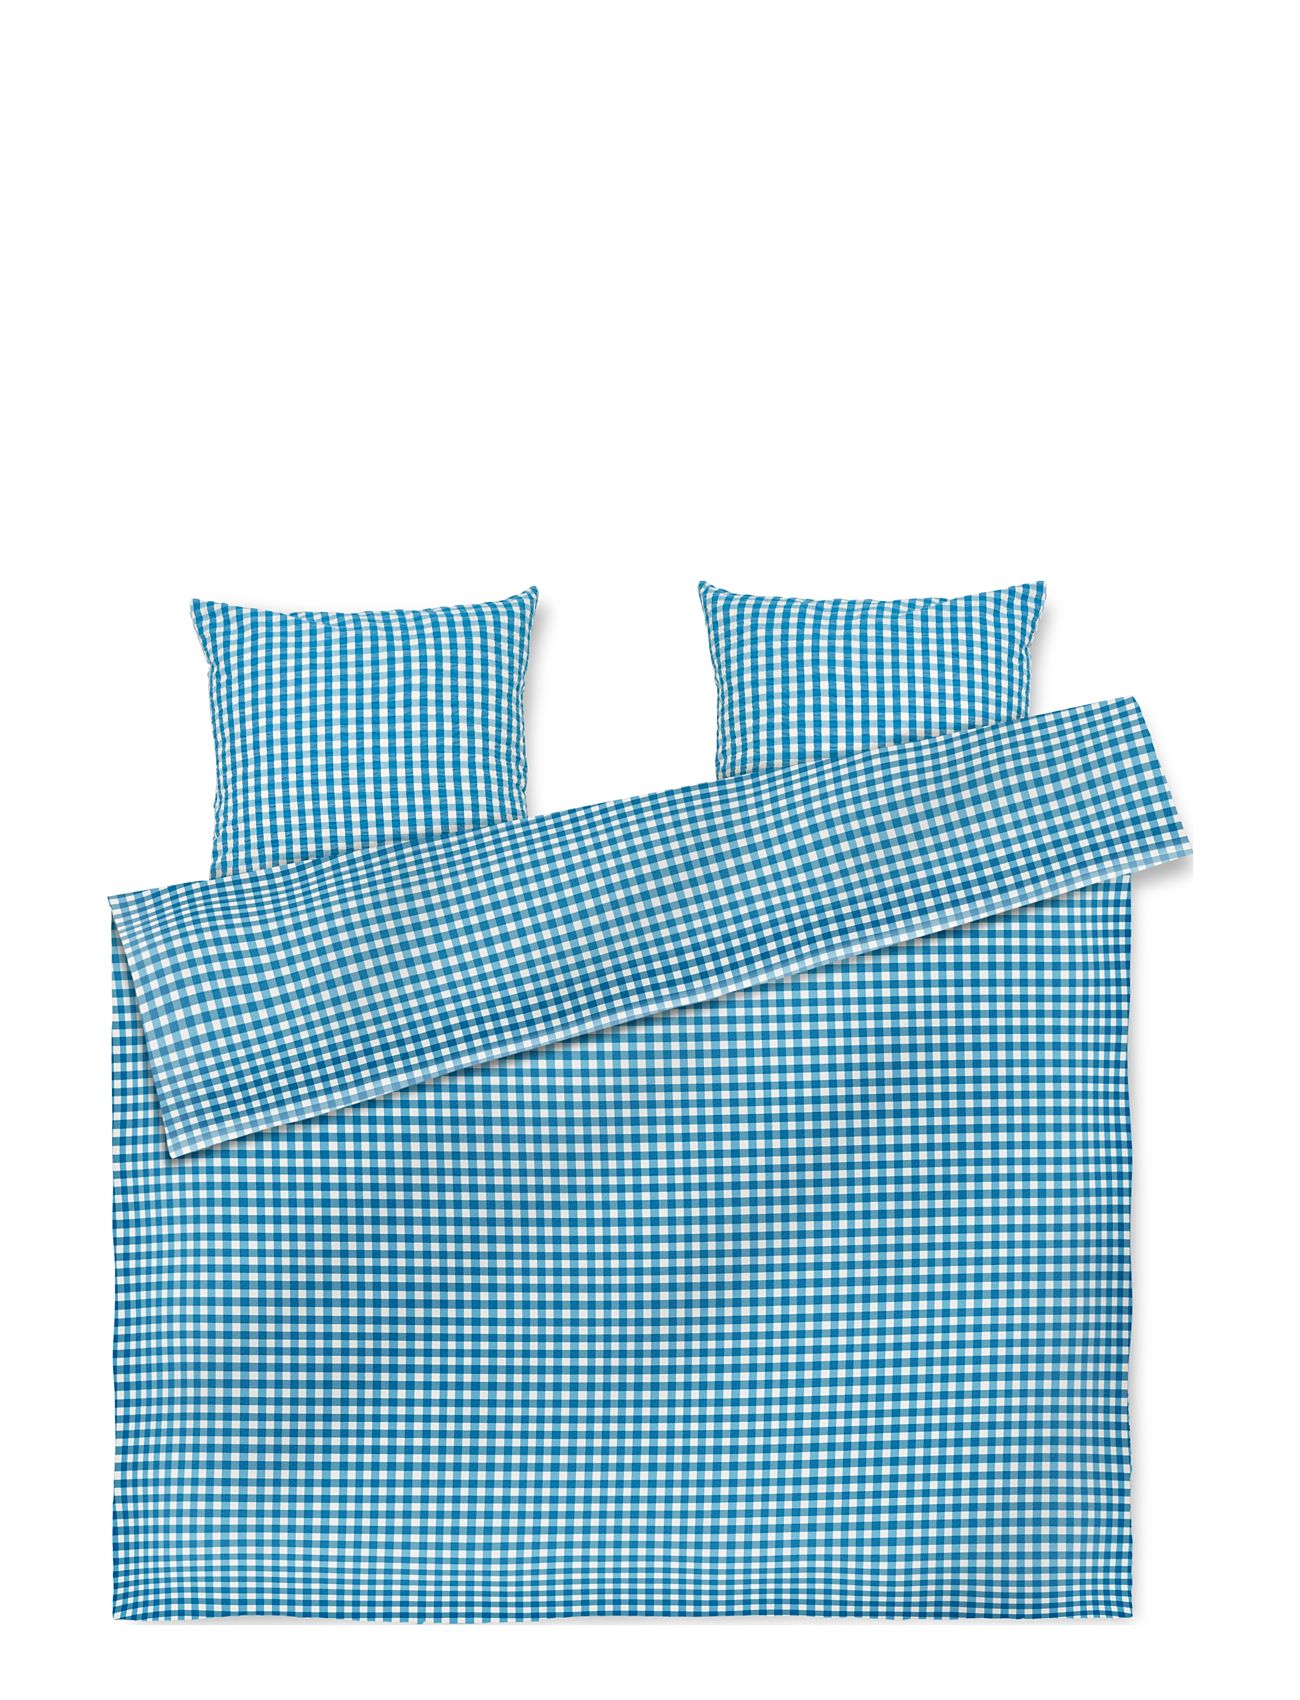 Bæk&Bølge Sengetøj 200X220 Cm Dk Home Textiles Bedtextiles Bed Sets Blue Juna